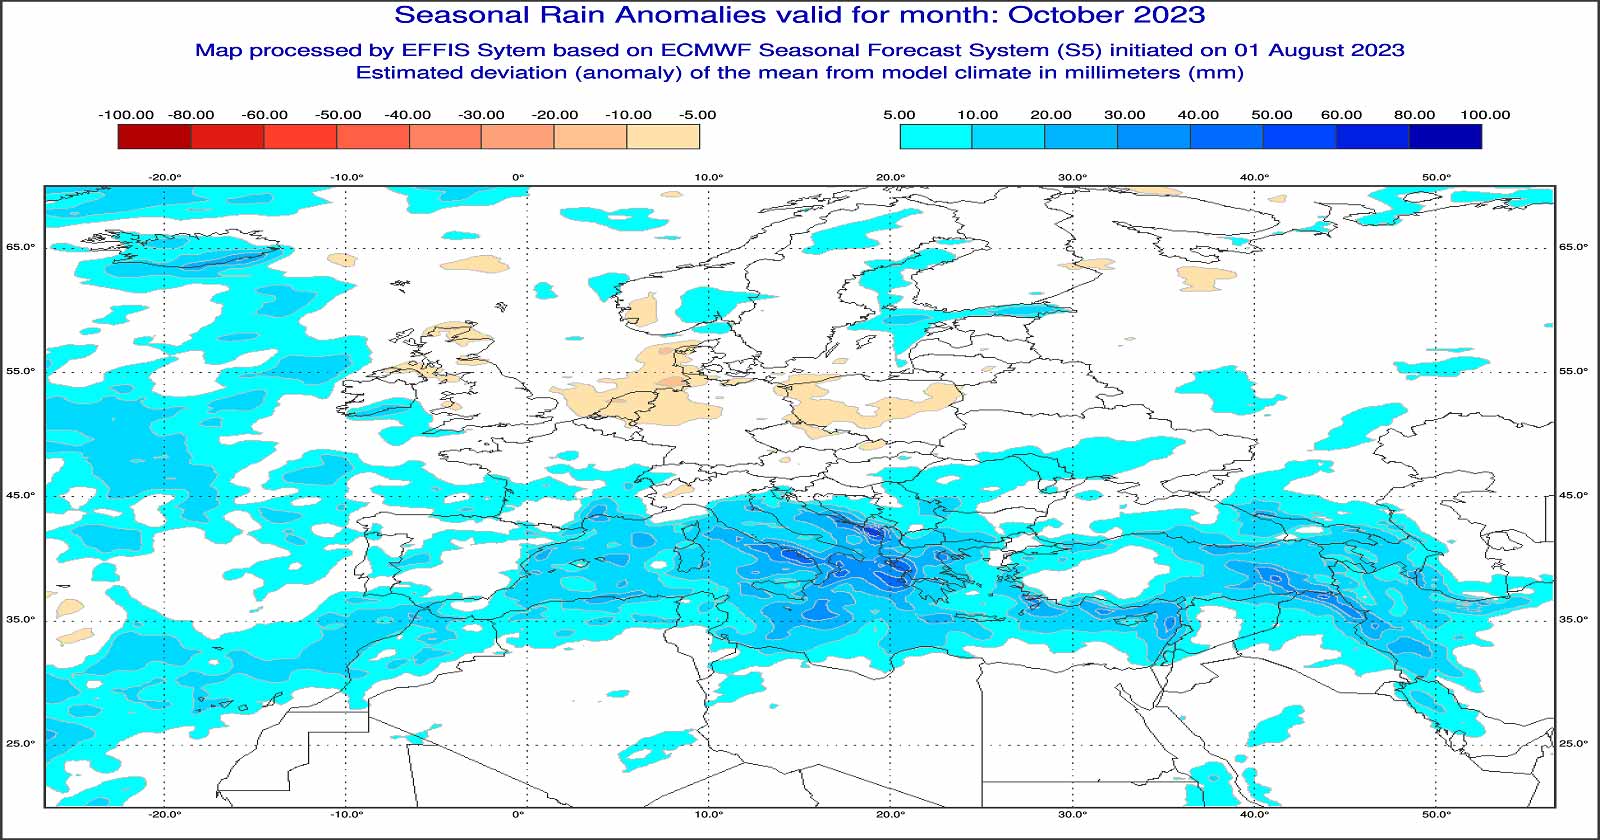 Anomalie di precipitazione previste dal modello europeo per ottobre 2023 - effis.jrc.ec.europa.eu.eu